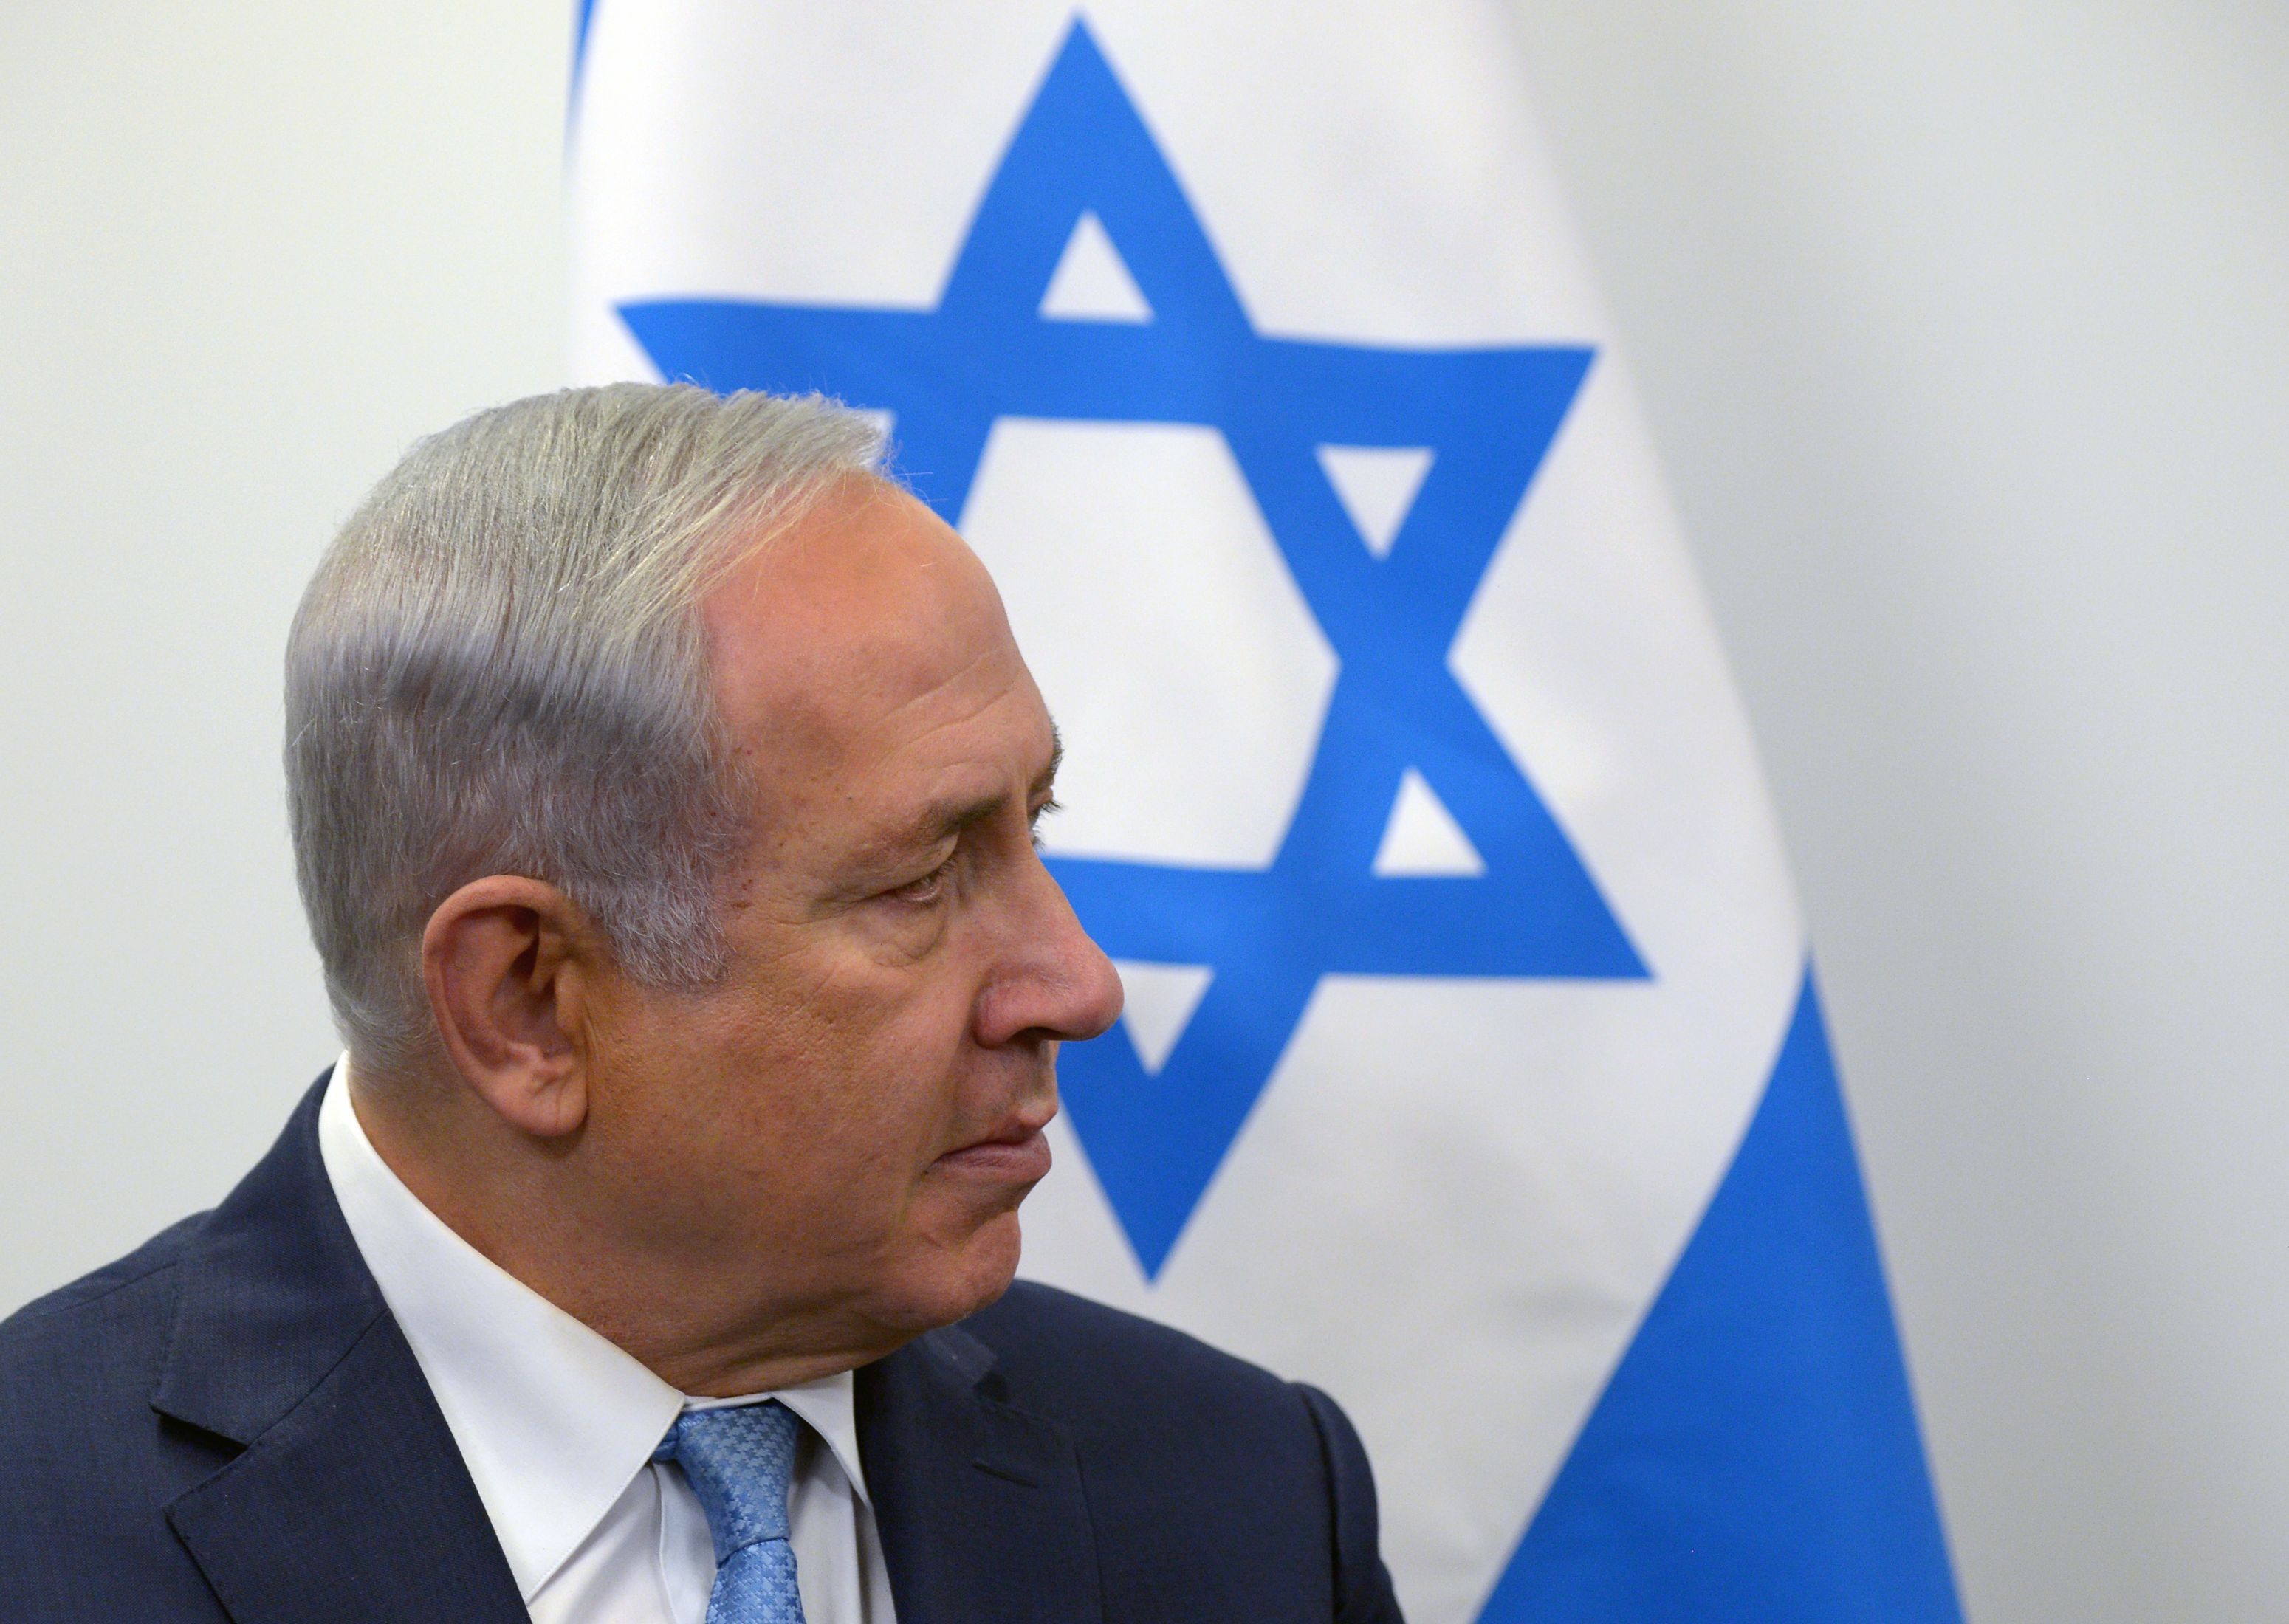 Premierul Benjamin Netanyahu: Iranul urmăreşte să trimită arme "foarte periculoase" în Siria pentru a ameninţa Israelul